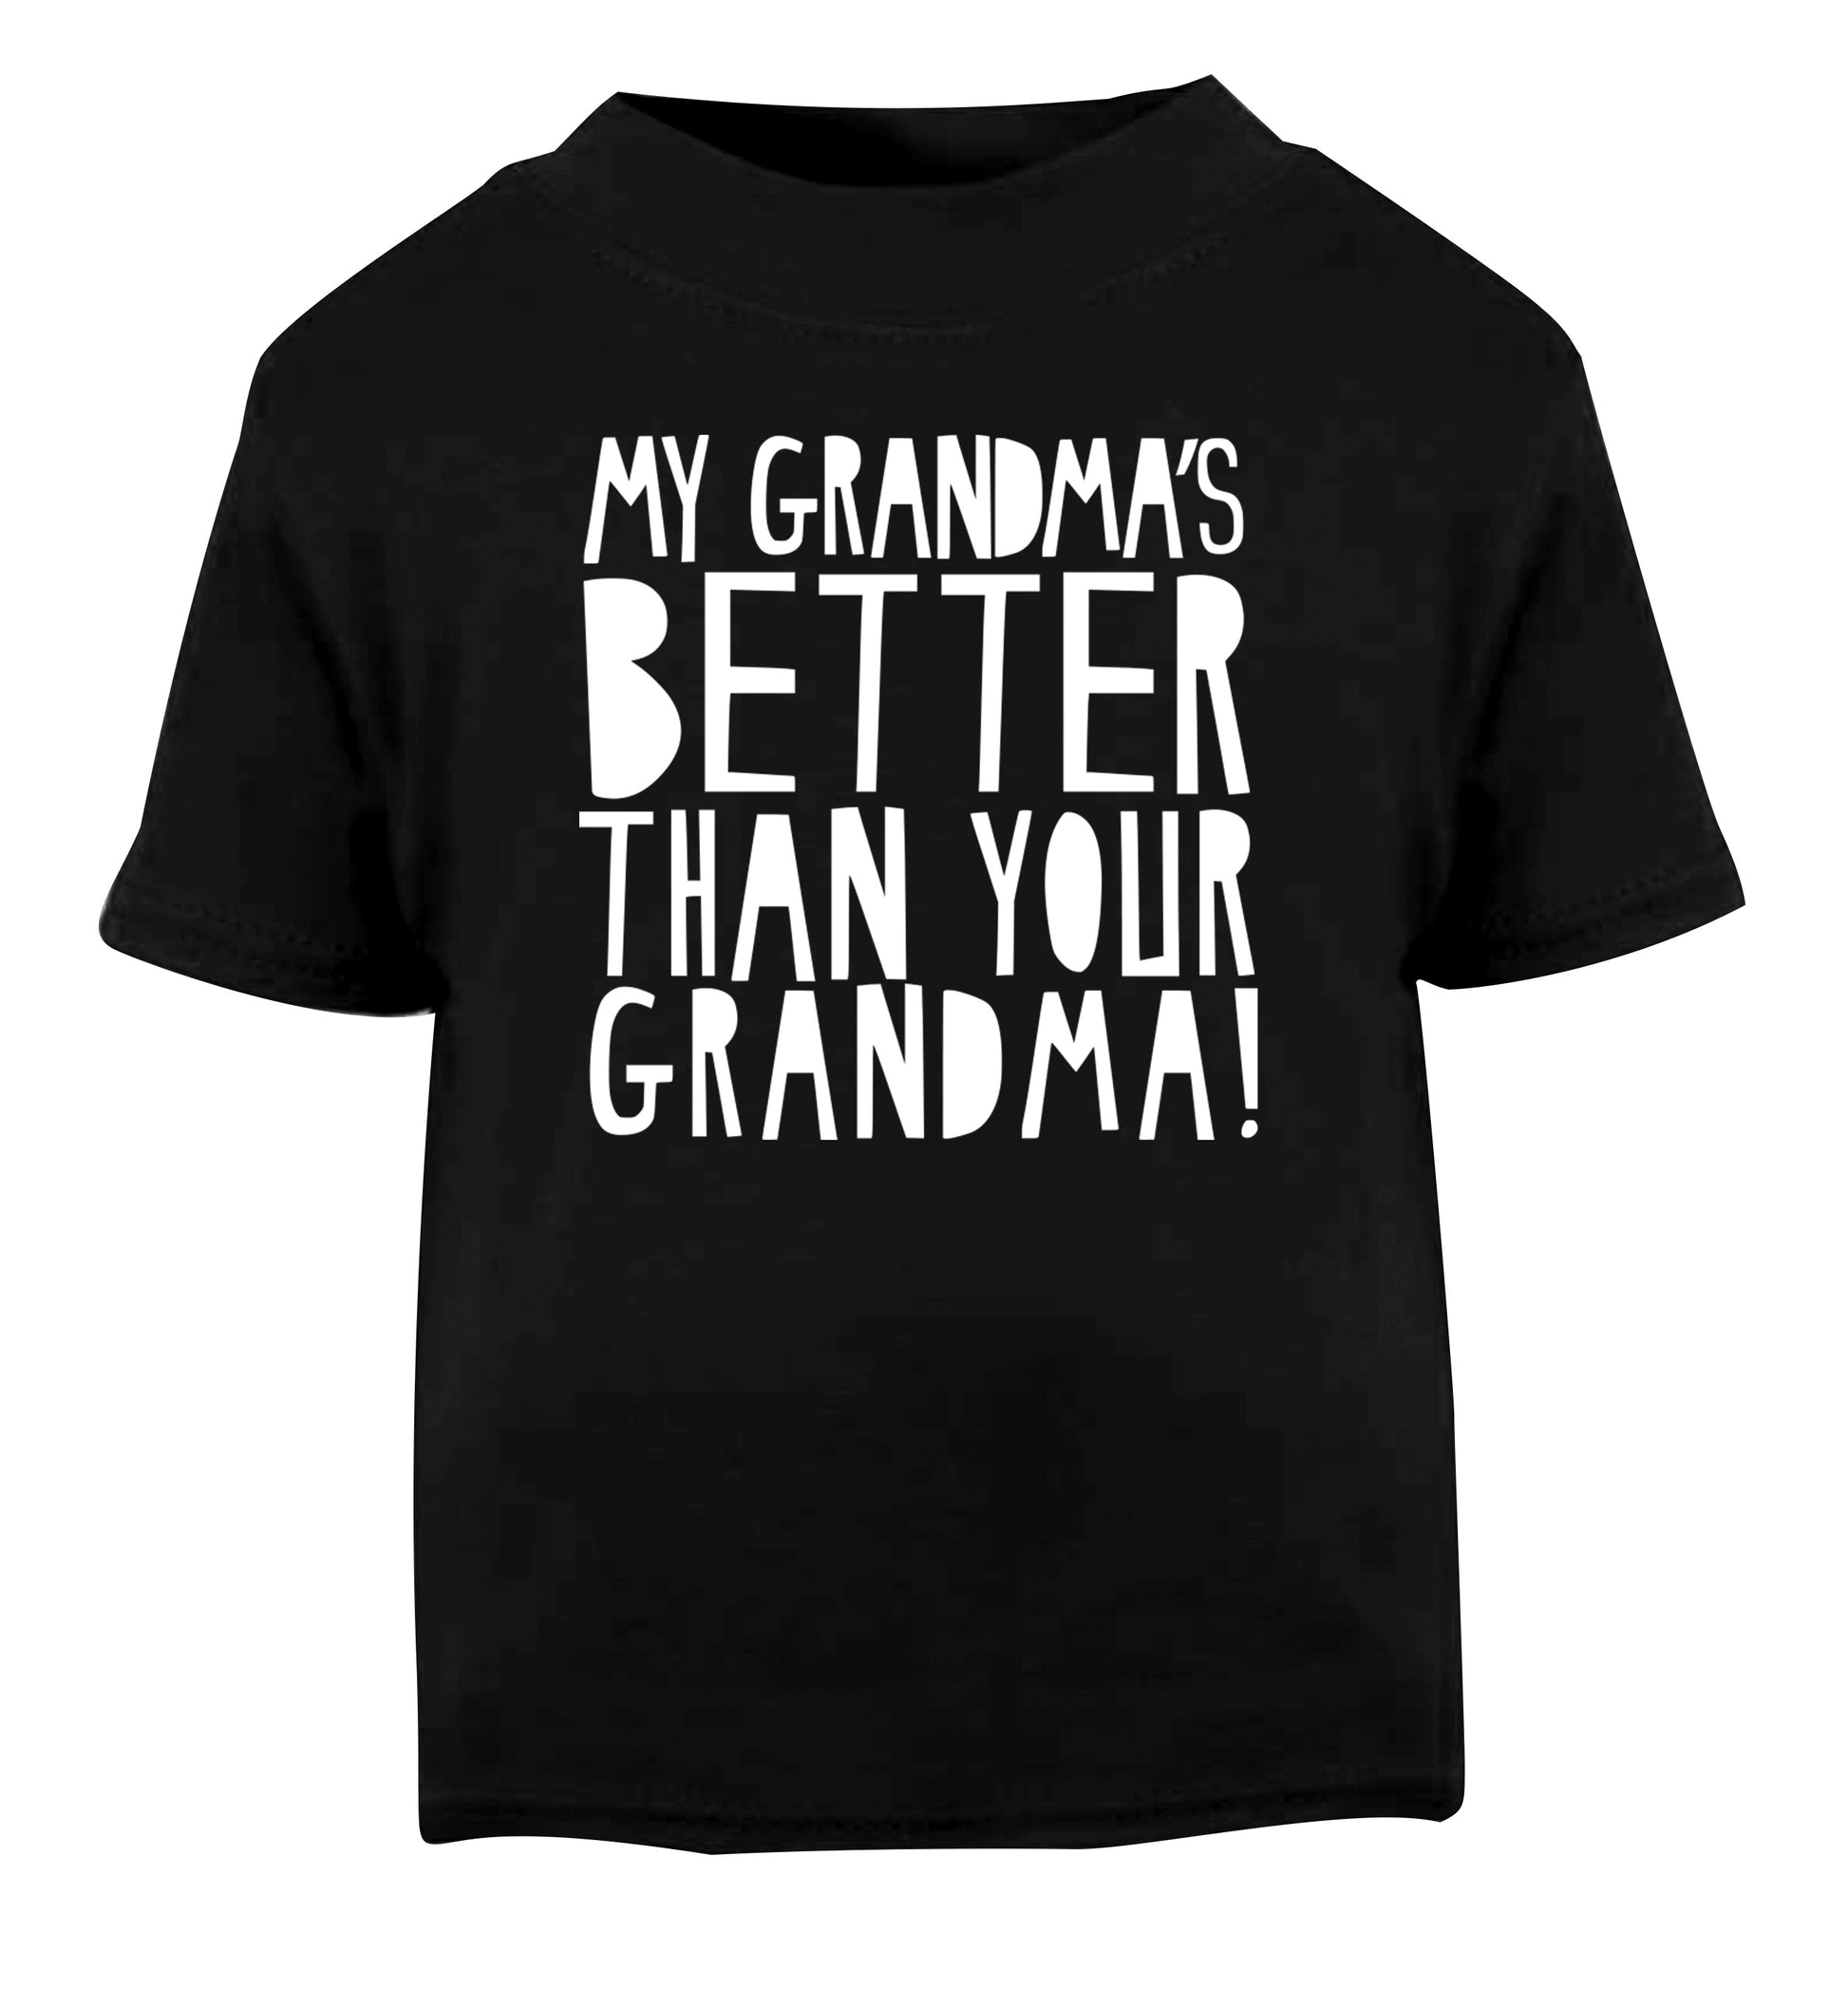 My grandma's better than your grandma Black Baby Toddler Tshirt 2 years